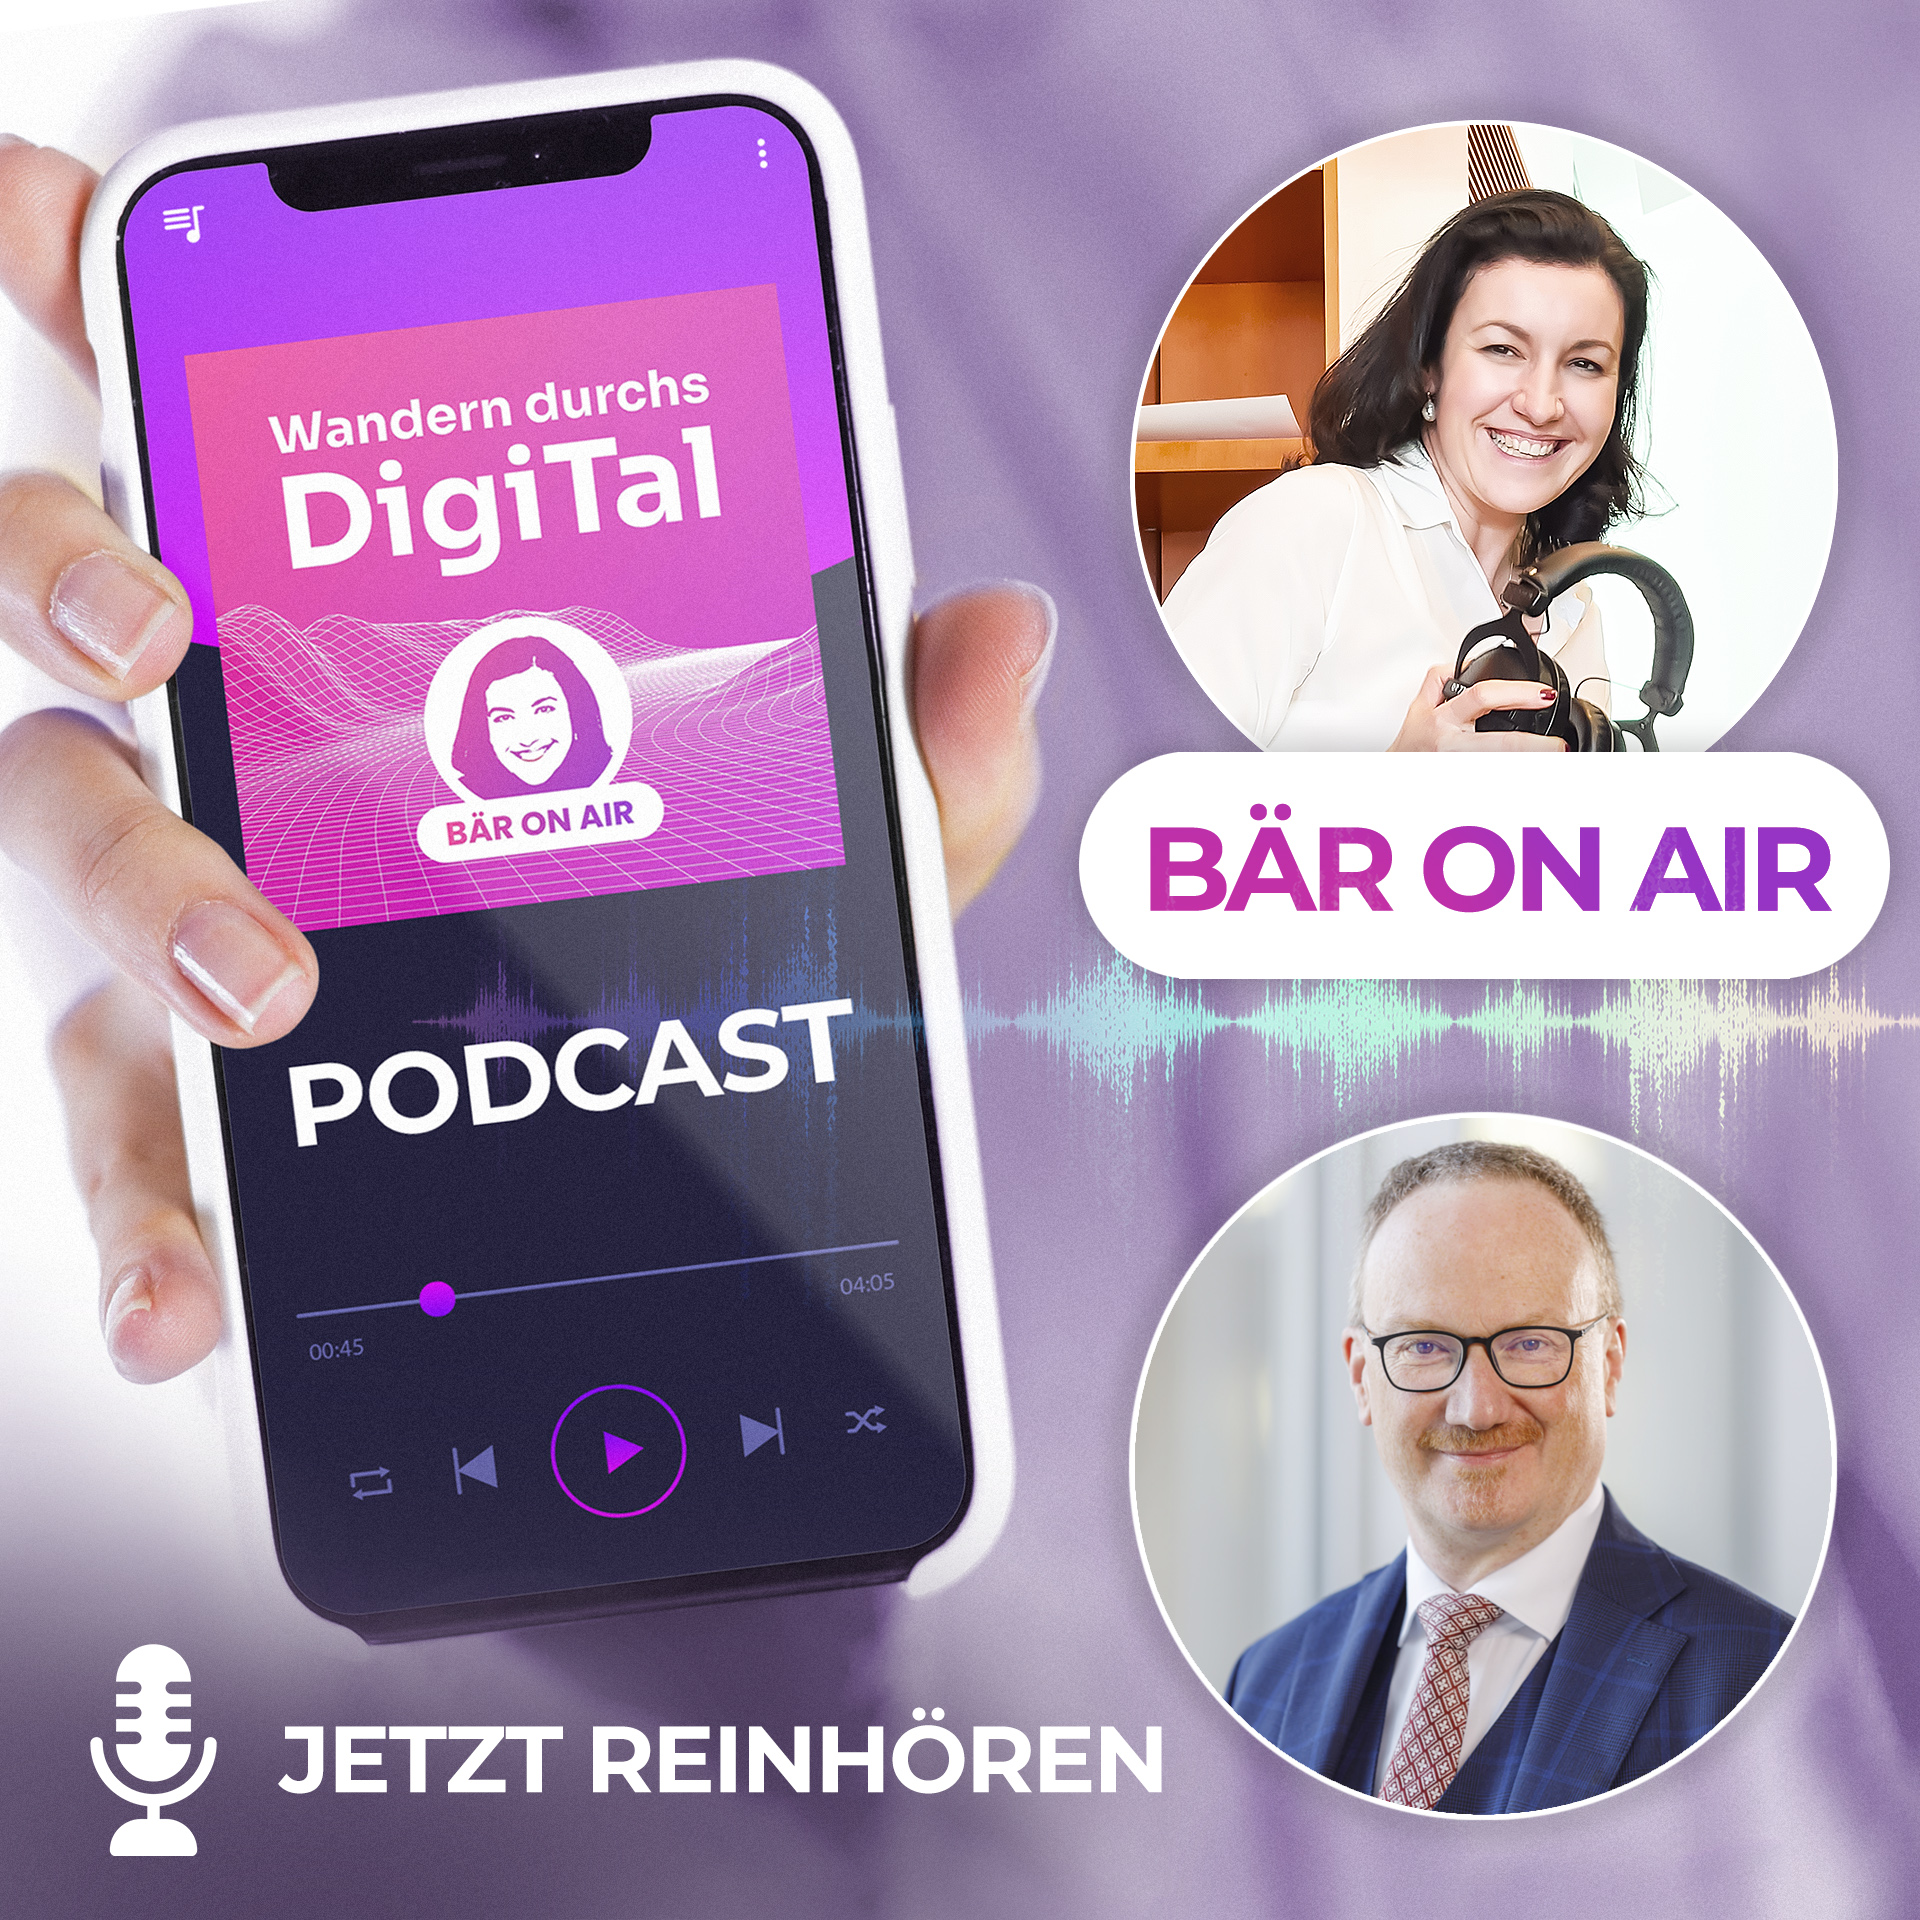 Coverbild zum Podcast von Staatsministerin Bär mit Professor Lars Feld.